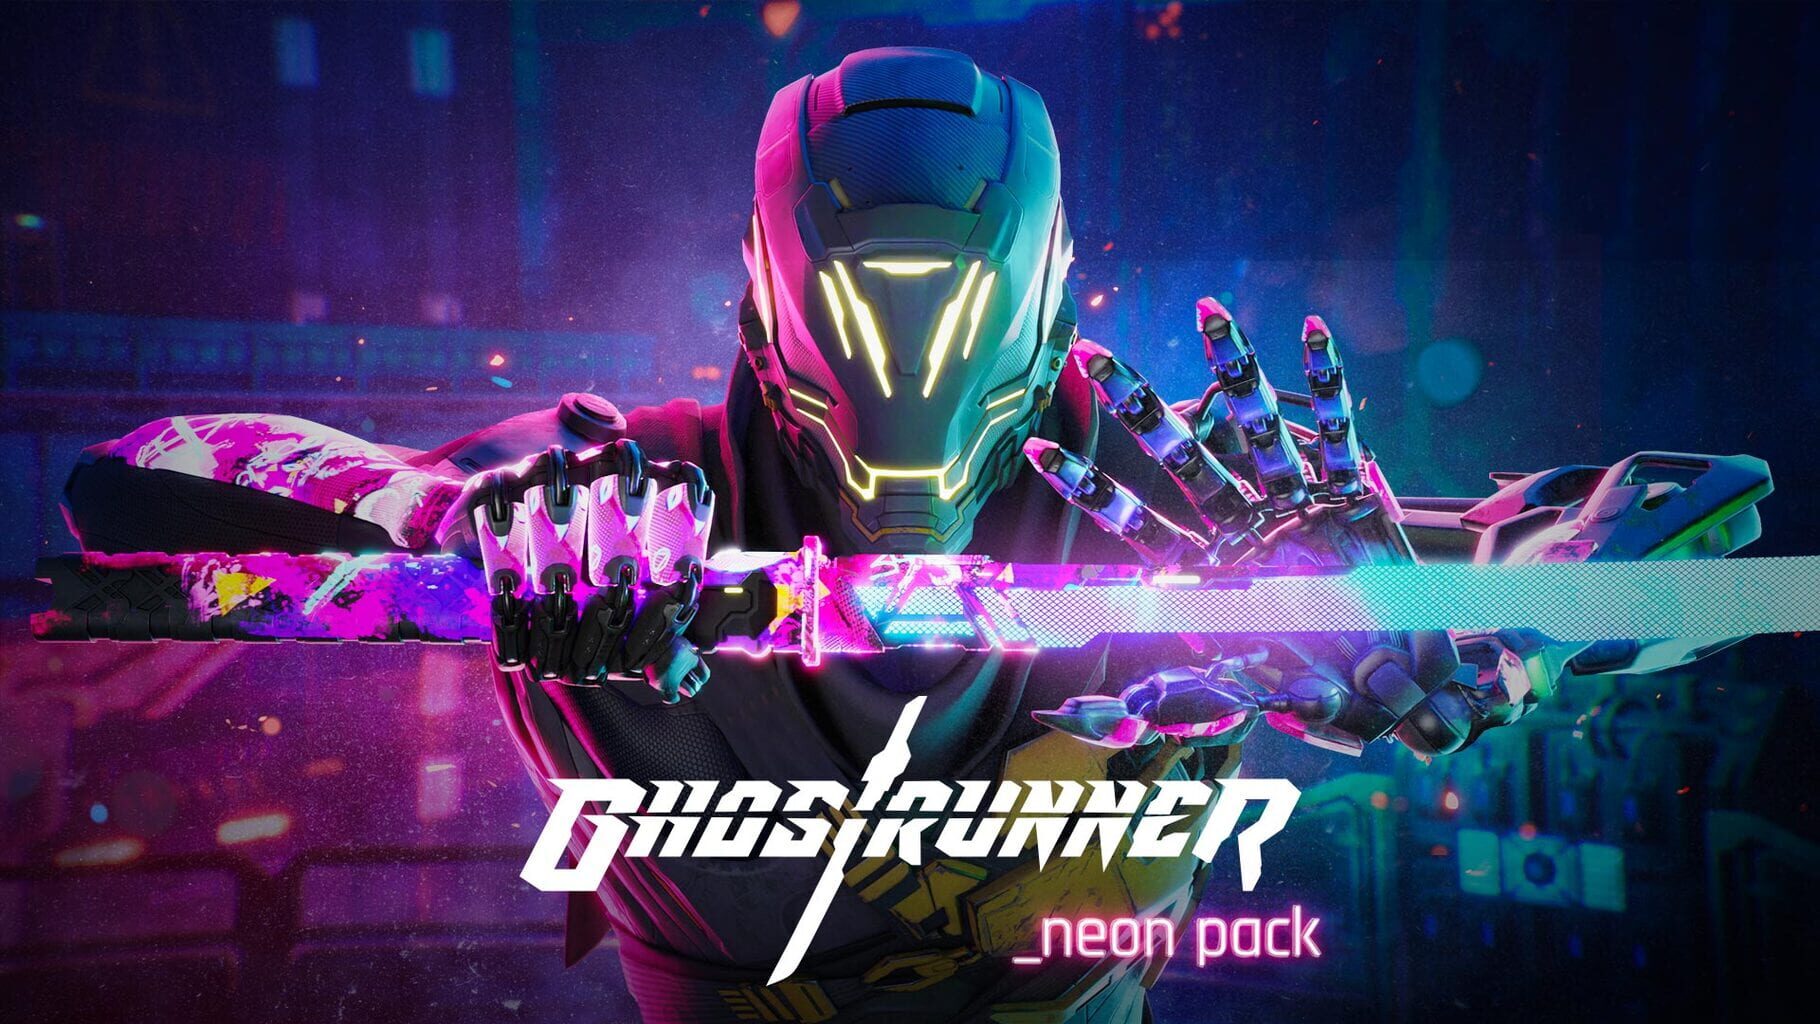 Ghostrunner: Neon Pack artwork